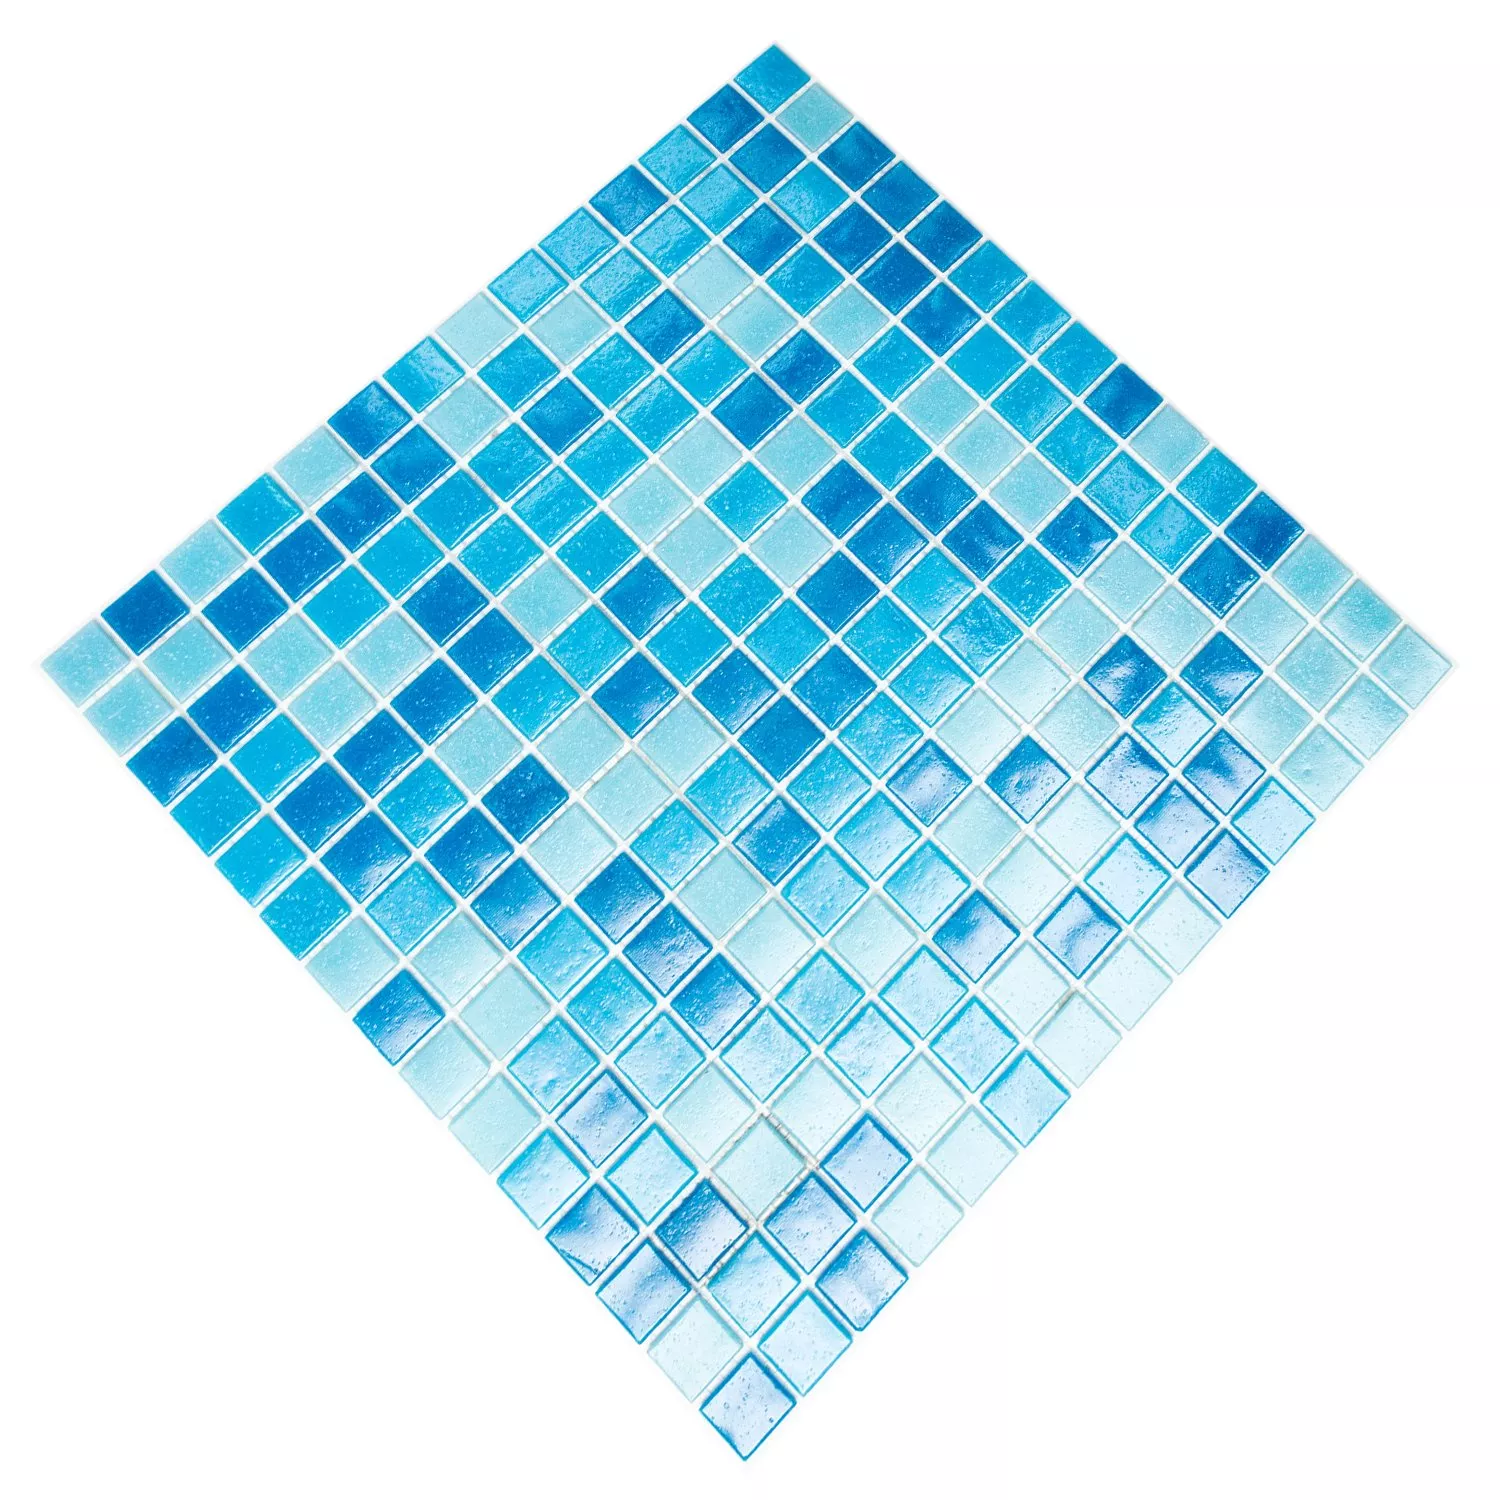 Mosaic Tiles Glass Blue Mix